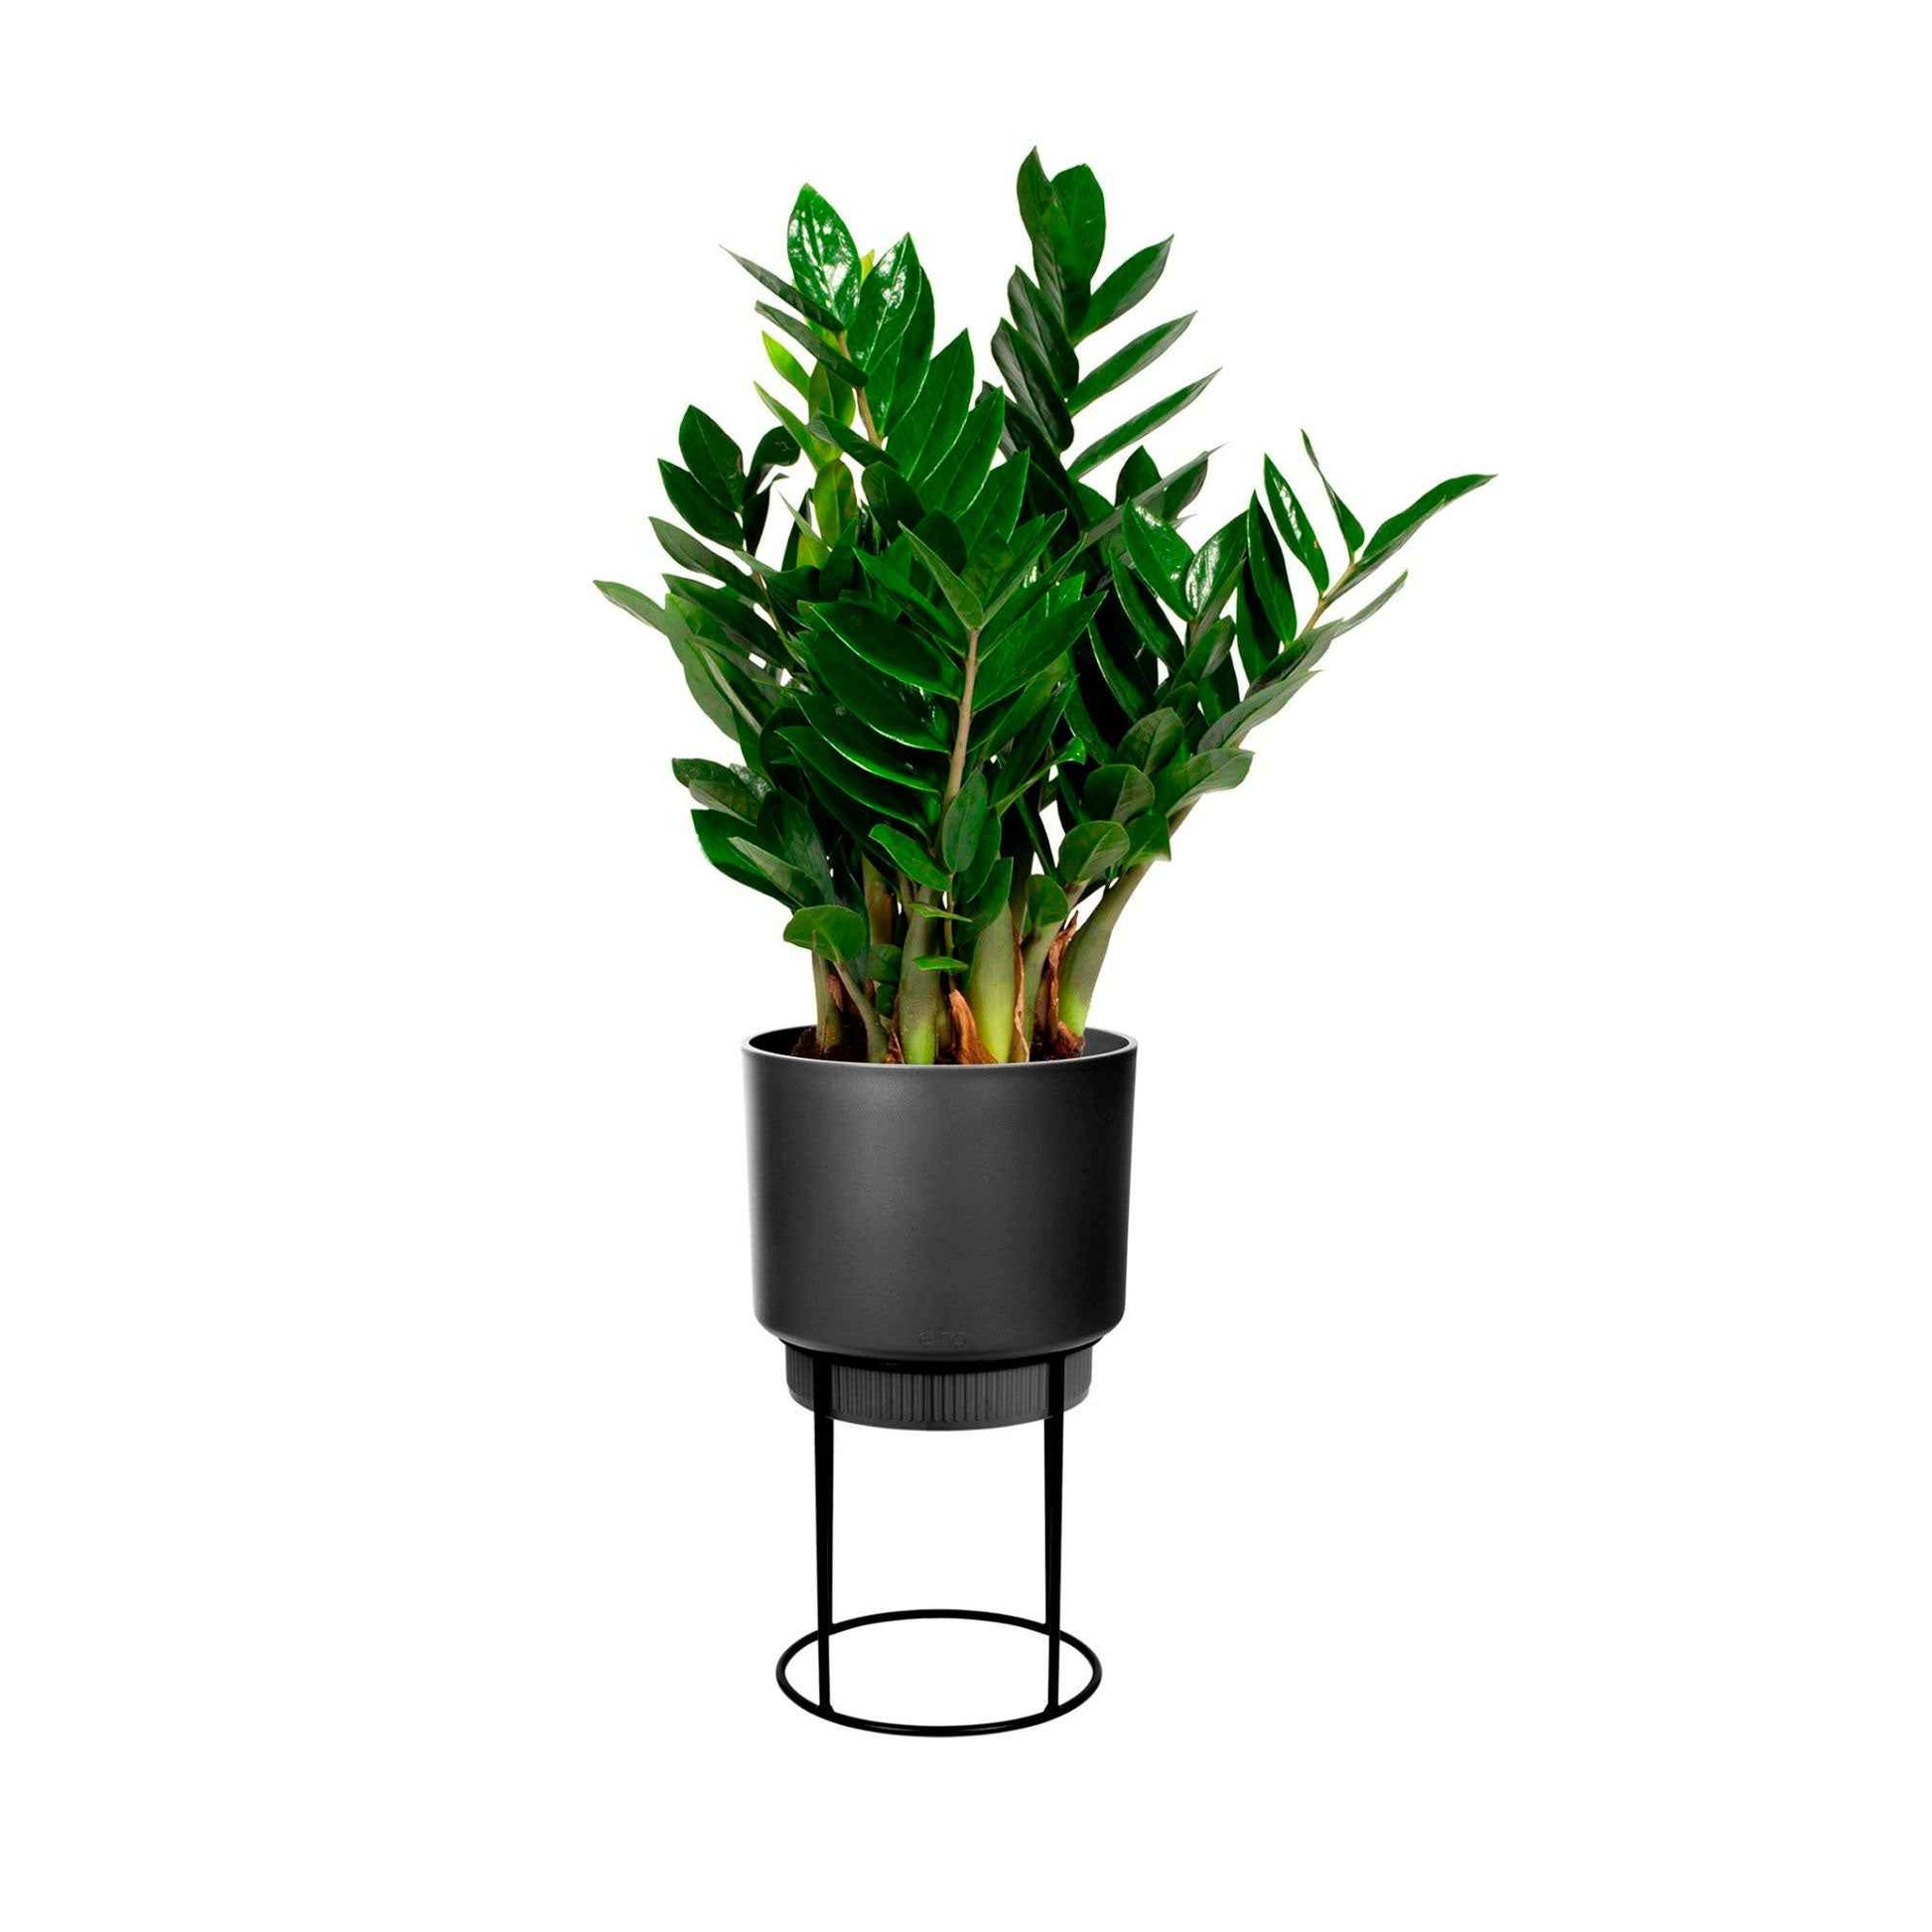 Elho B. for Studio Round- Pot pour l'intérieur avec table à plantes Noir - Elho